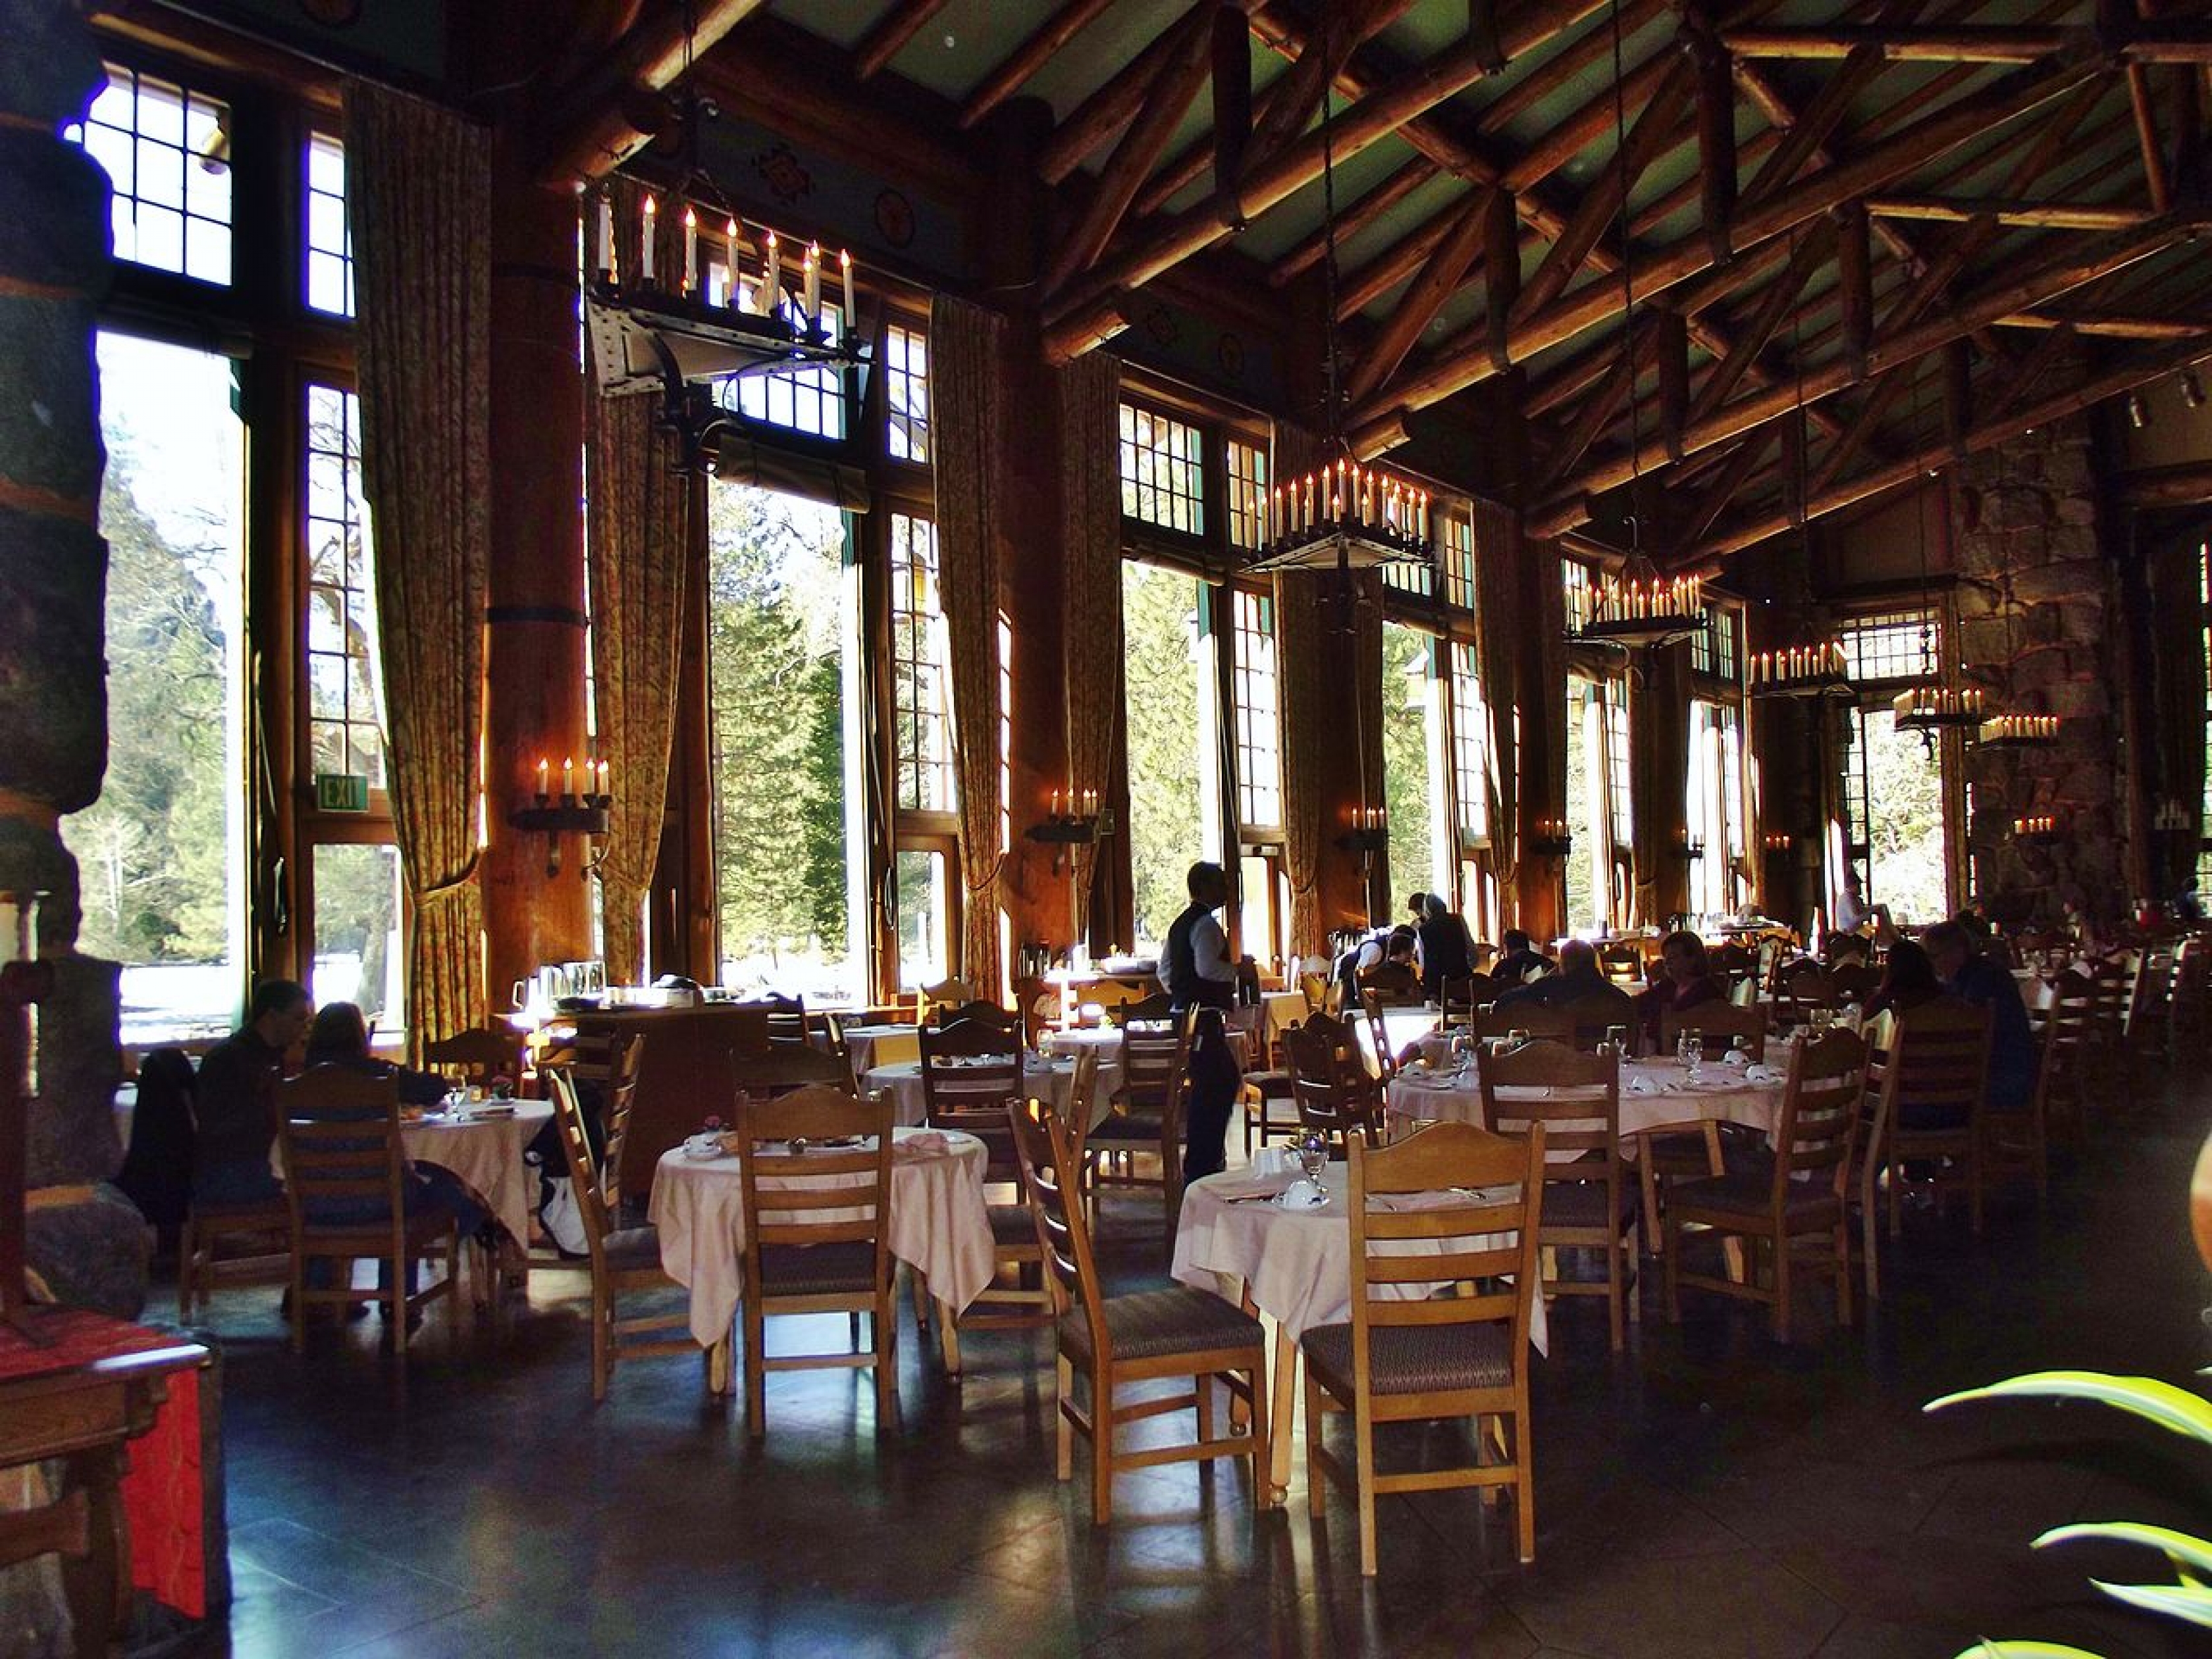 Ahwahnee Dining Room at Yosemite National Park.